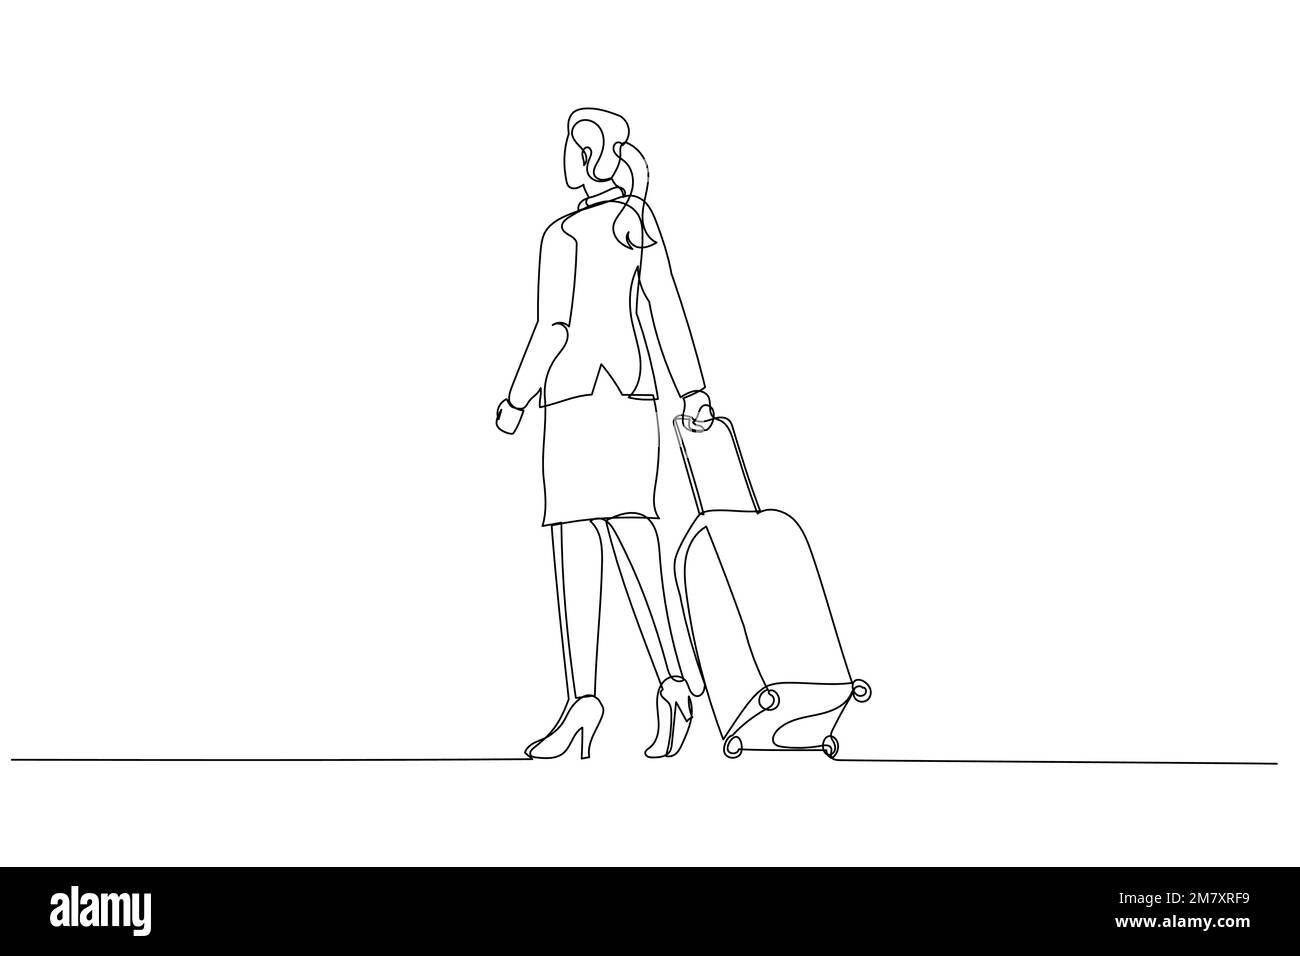 Dessin animé d'une femme d'affaires avec une valise qui marche dans l'allée. Un art de style ligne Illustration de Vecteur